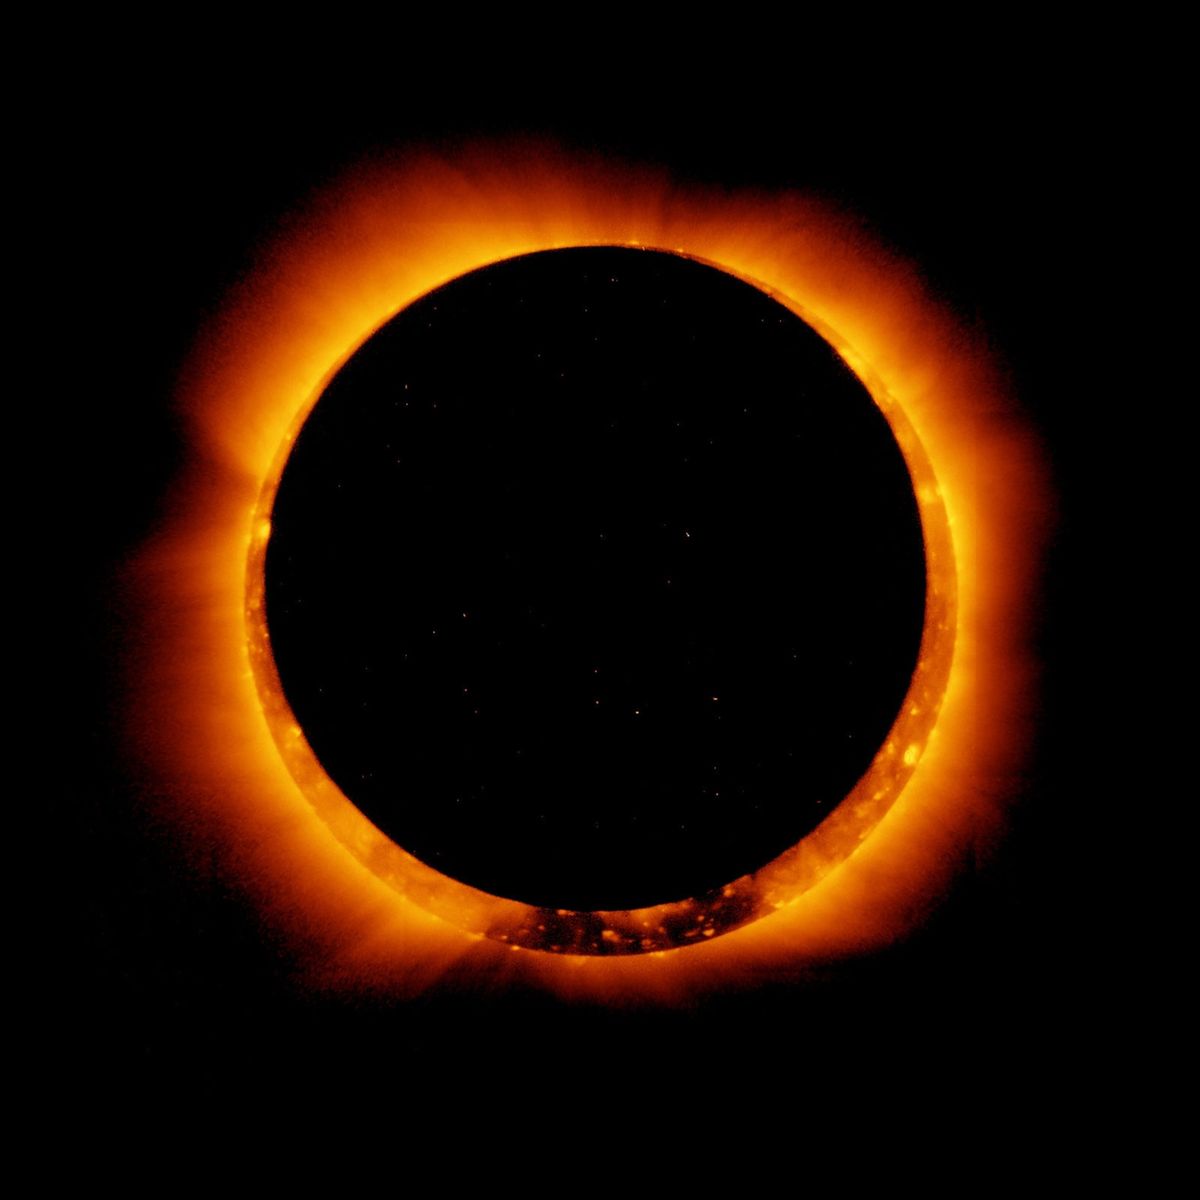 Deze adembenemende foto van een ringvormige zonsverduistering op 4 januari 2010 werd gemaakt door de ruimtesonde Hinode die onderzoek doet naar de zon